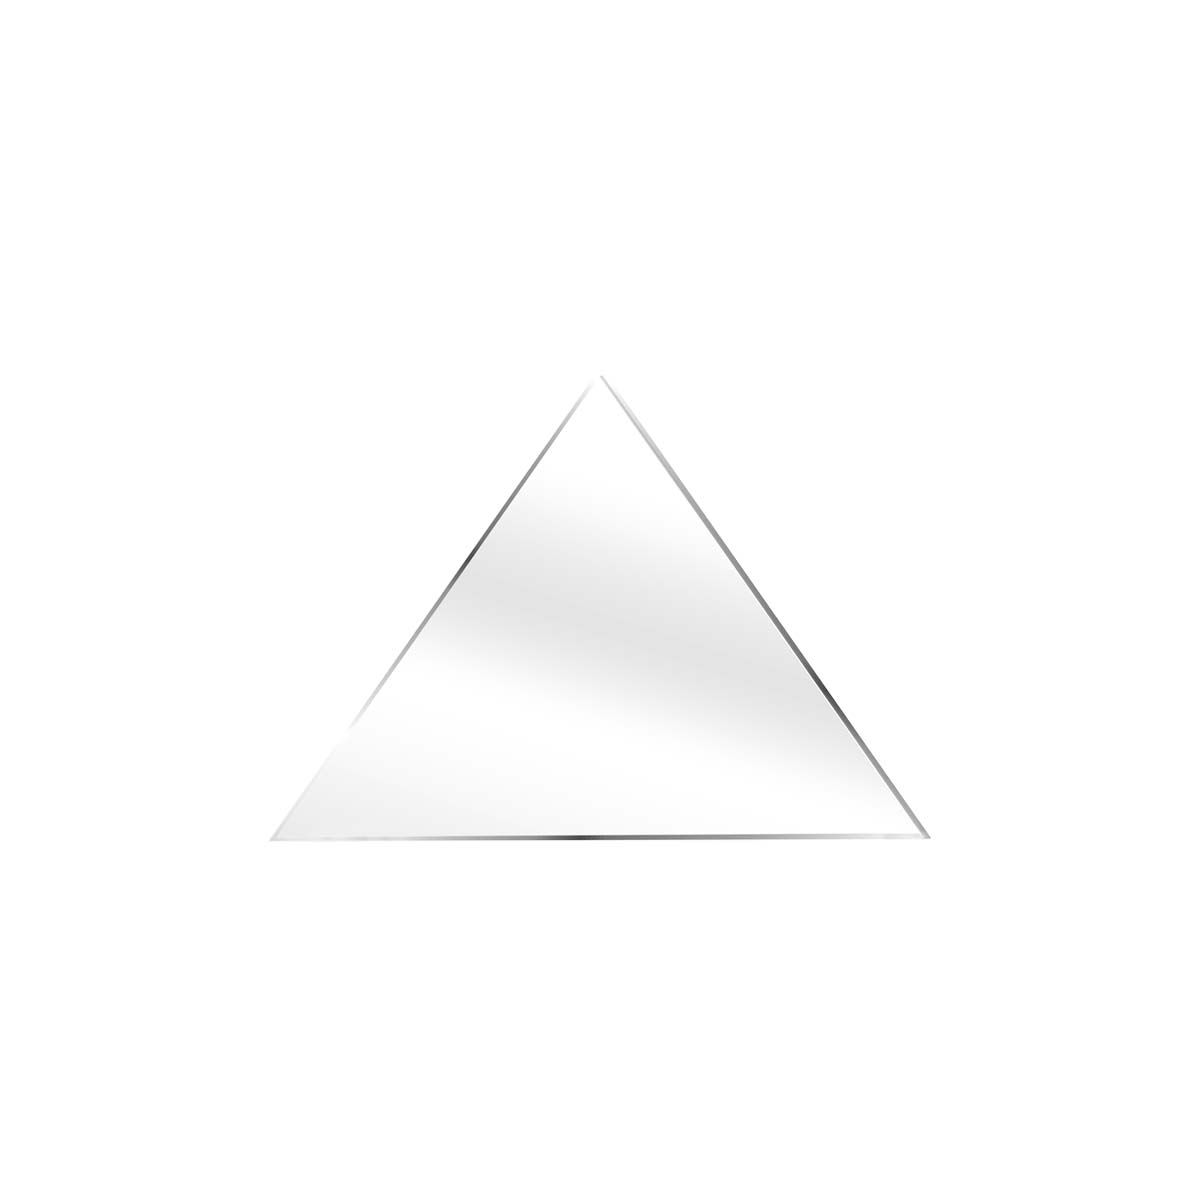 بوم پلکسی مثلث 10 در 10 در 12 سانتیمتر